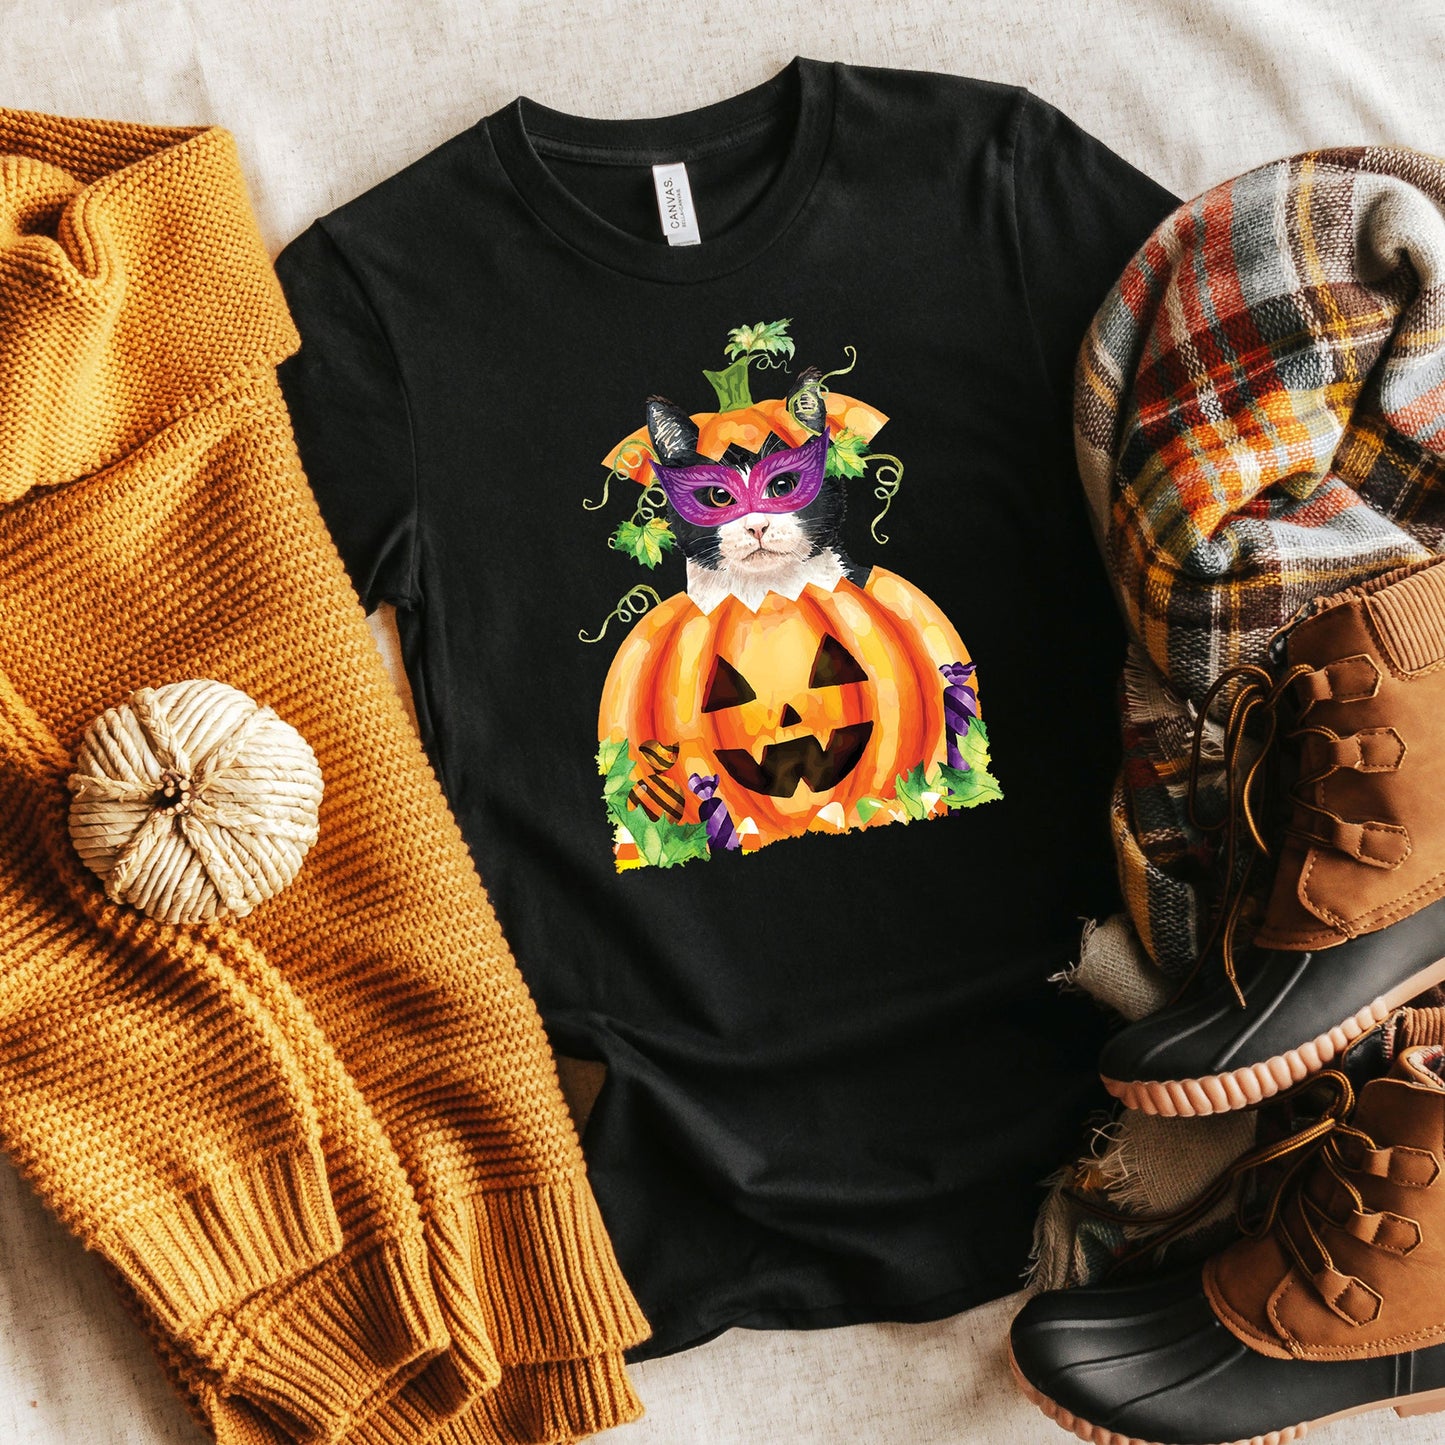 Halloween Pets T-shirt, Halloween Tee